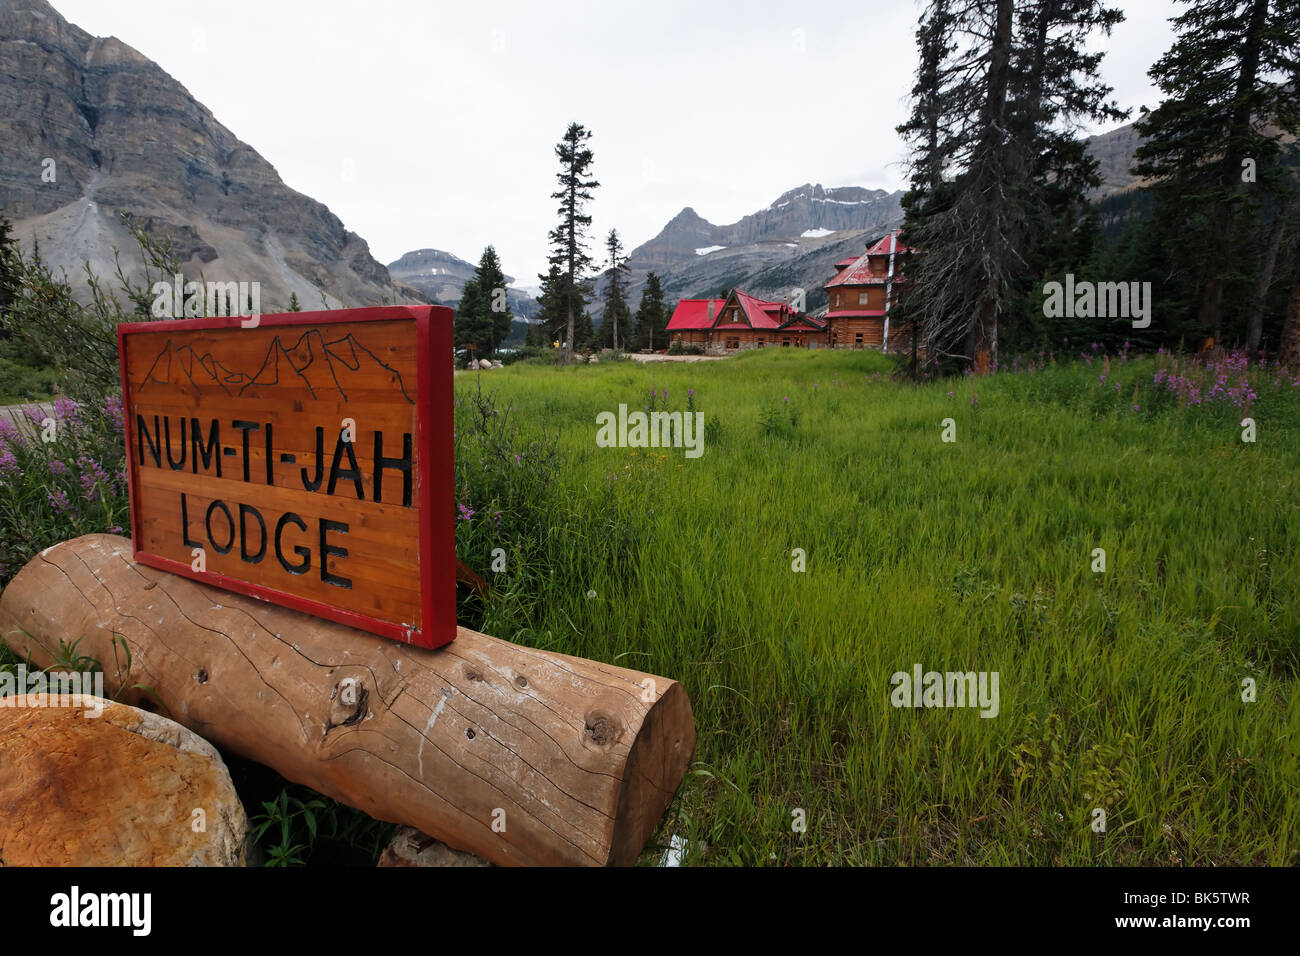 Vue rapprochée d'un signe, Num-Ti-Jah Lodge, Banff Nat'l Park, Alberta, Canada Banque D'Images